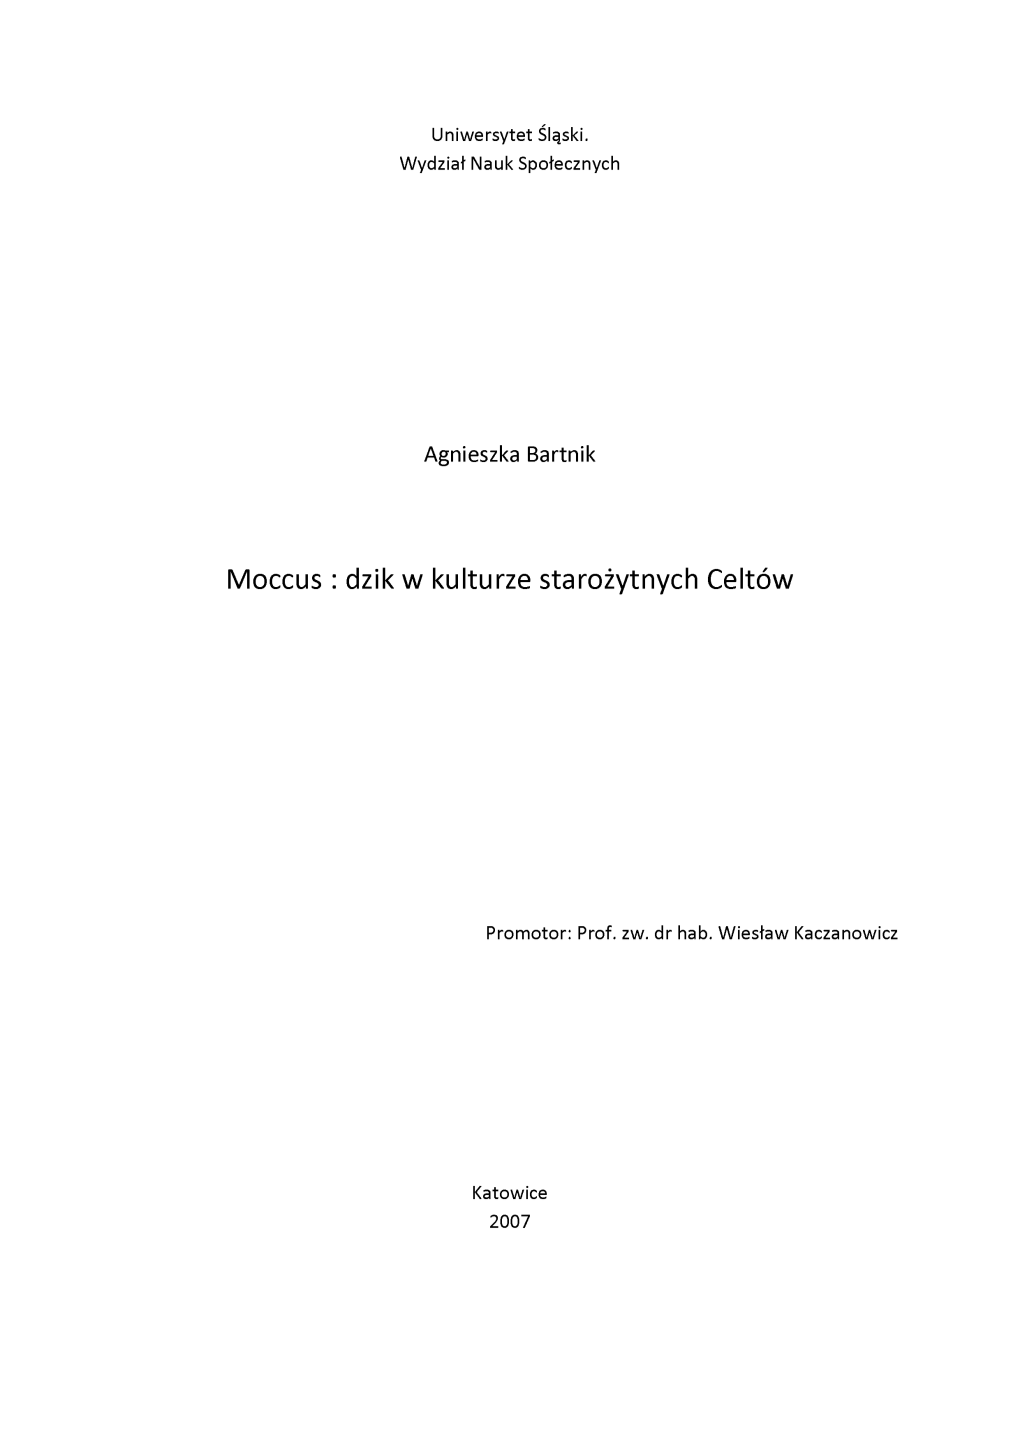 Moccus : Dzik W Kulturze Starożytnych Celtów